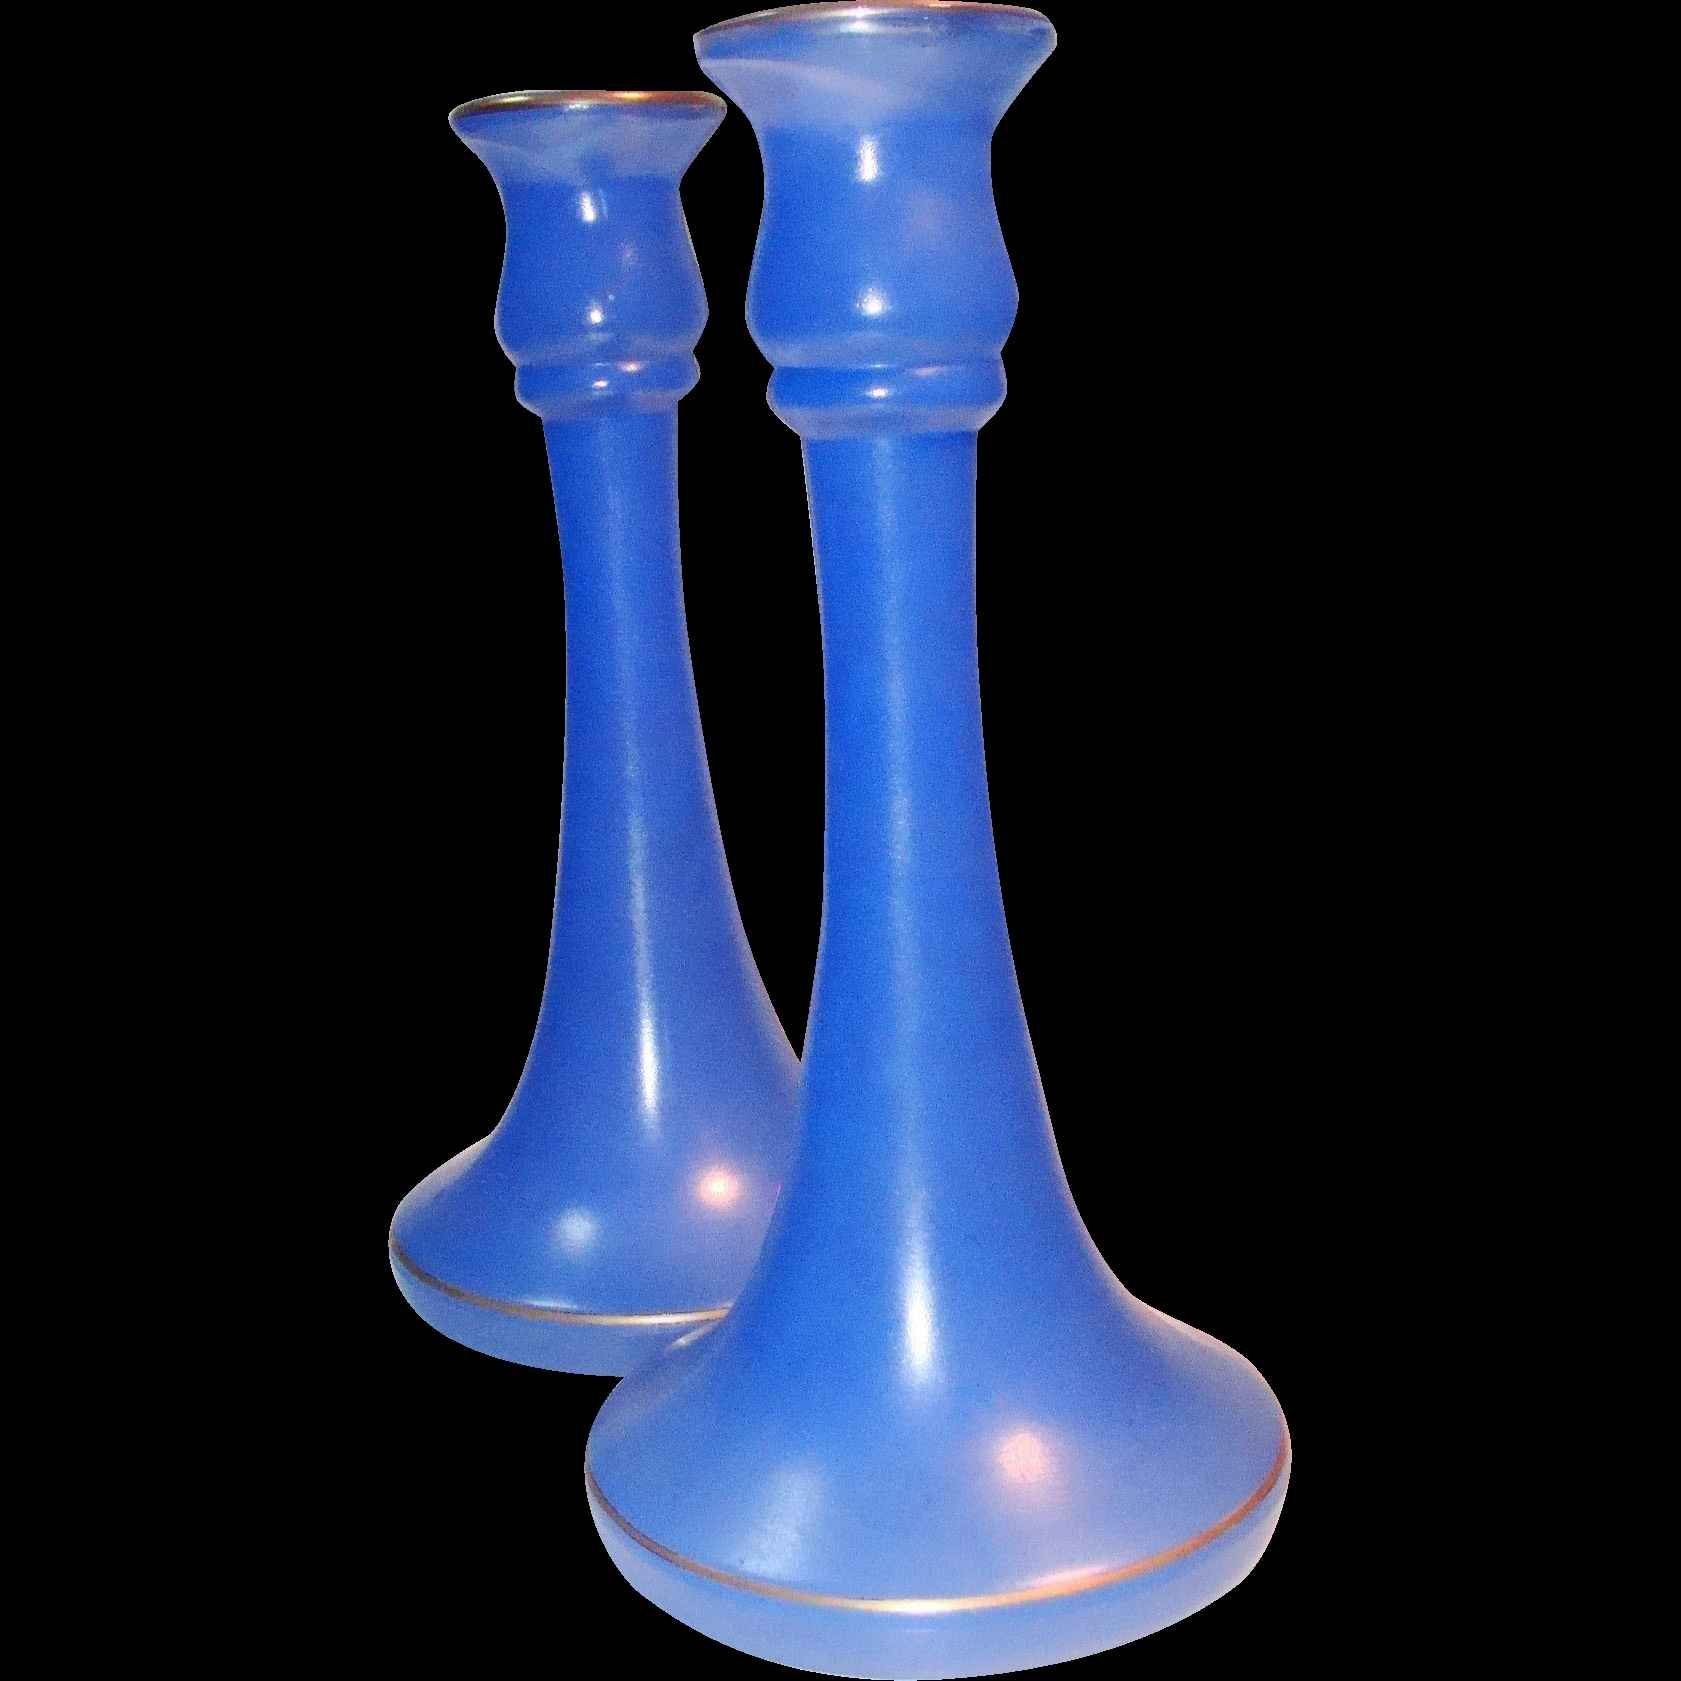 25 Elegant Wedgwood Blue Vase 2024 free download wedgwood blue vase of 37 fenton blue glass vase the weekly world within 37 fenton blue glass vase